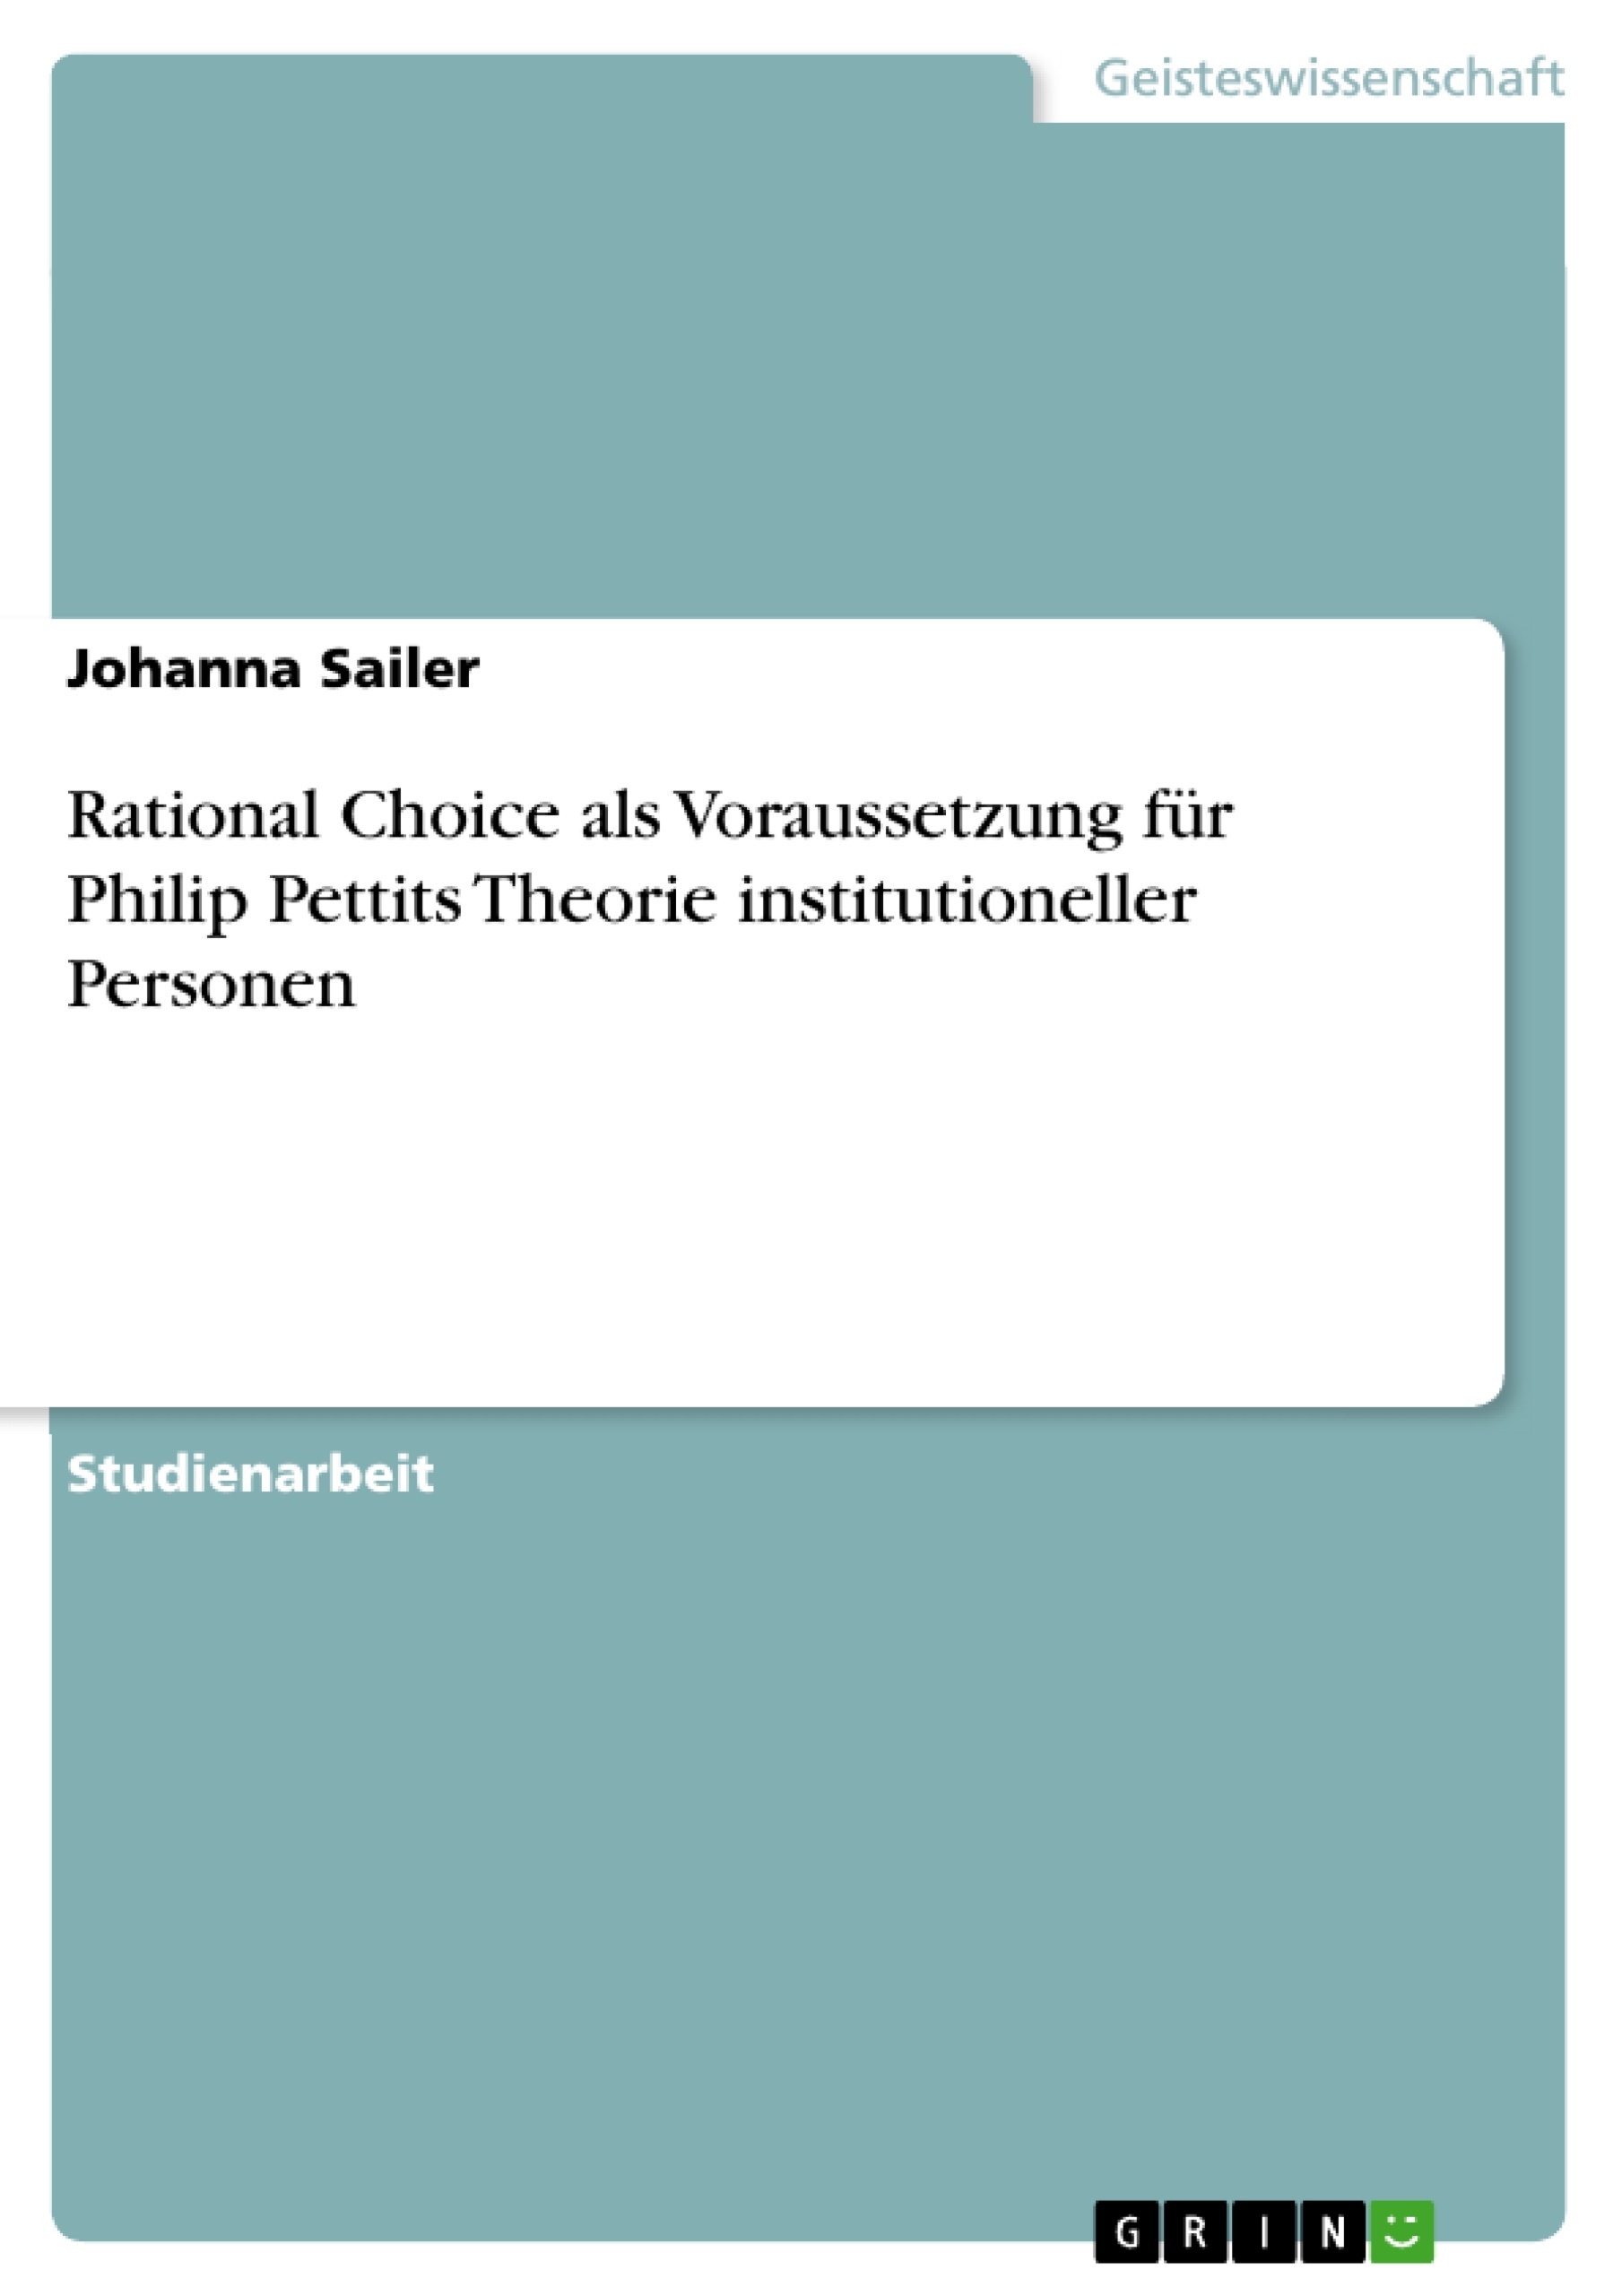 Titel: Rational Choice als Voraussetzung für Philip Pettits Theorie institutioneller Personen